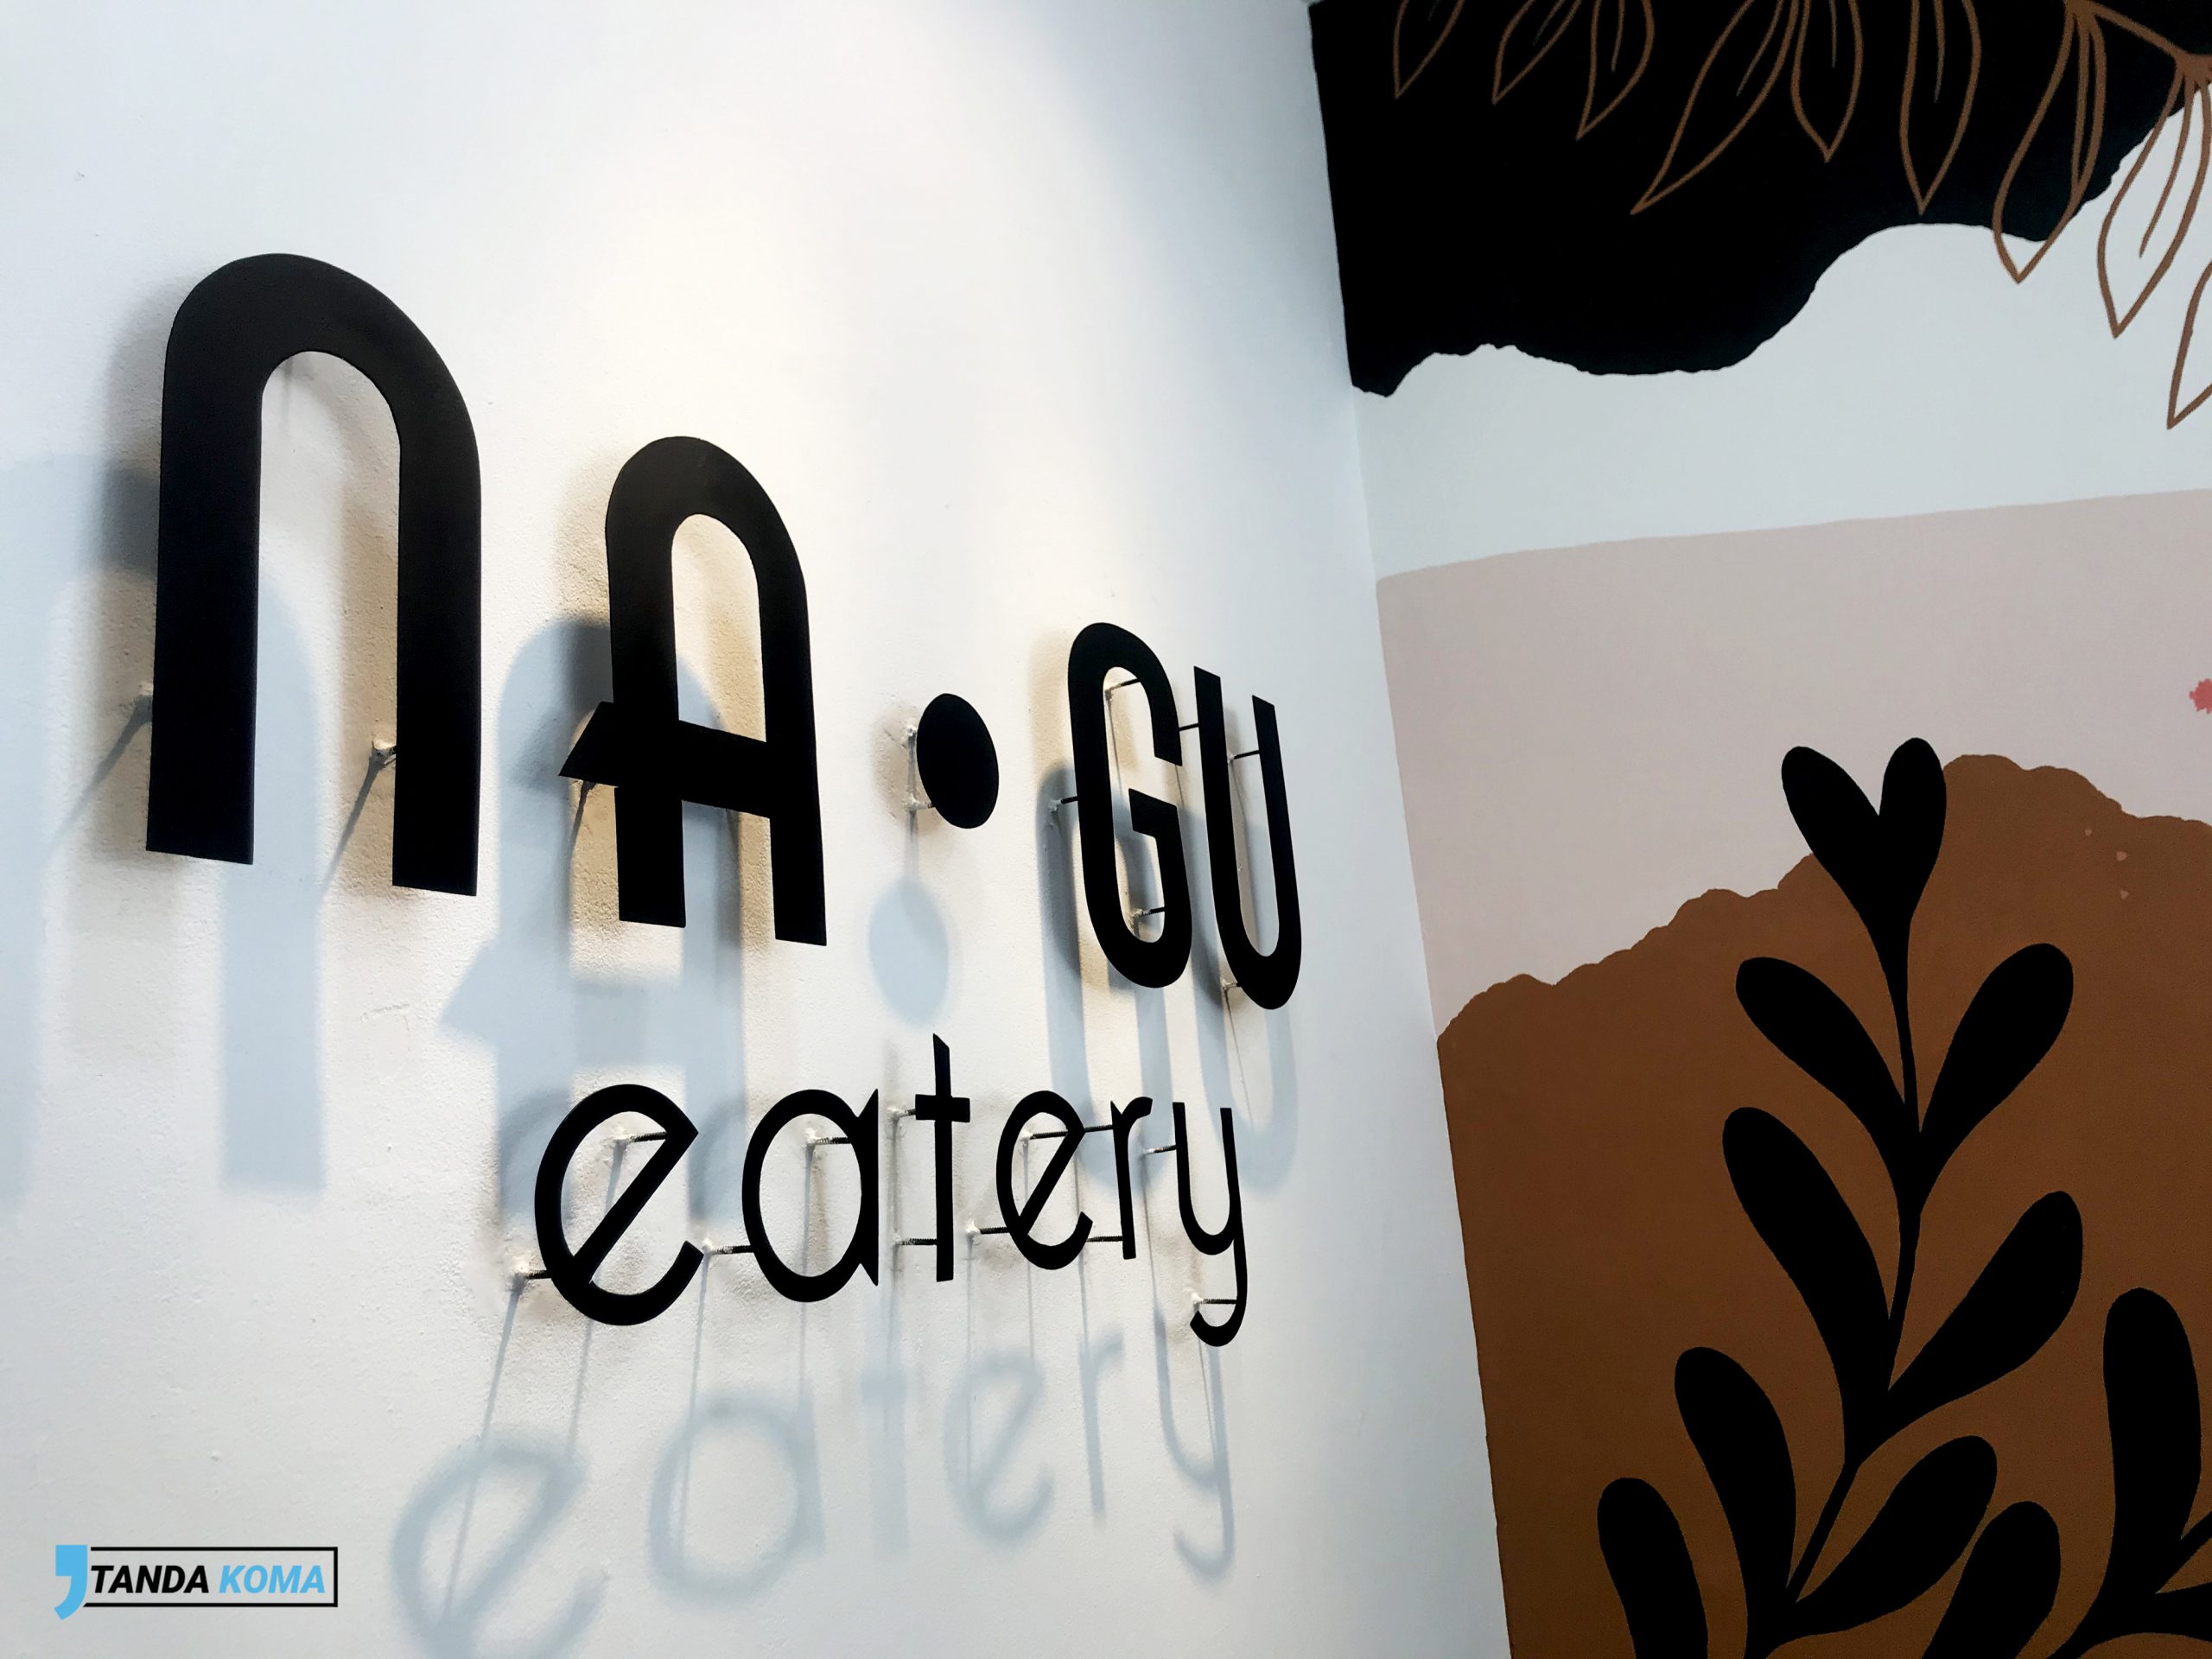 NaGu Eatery